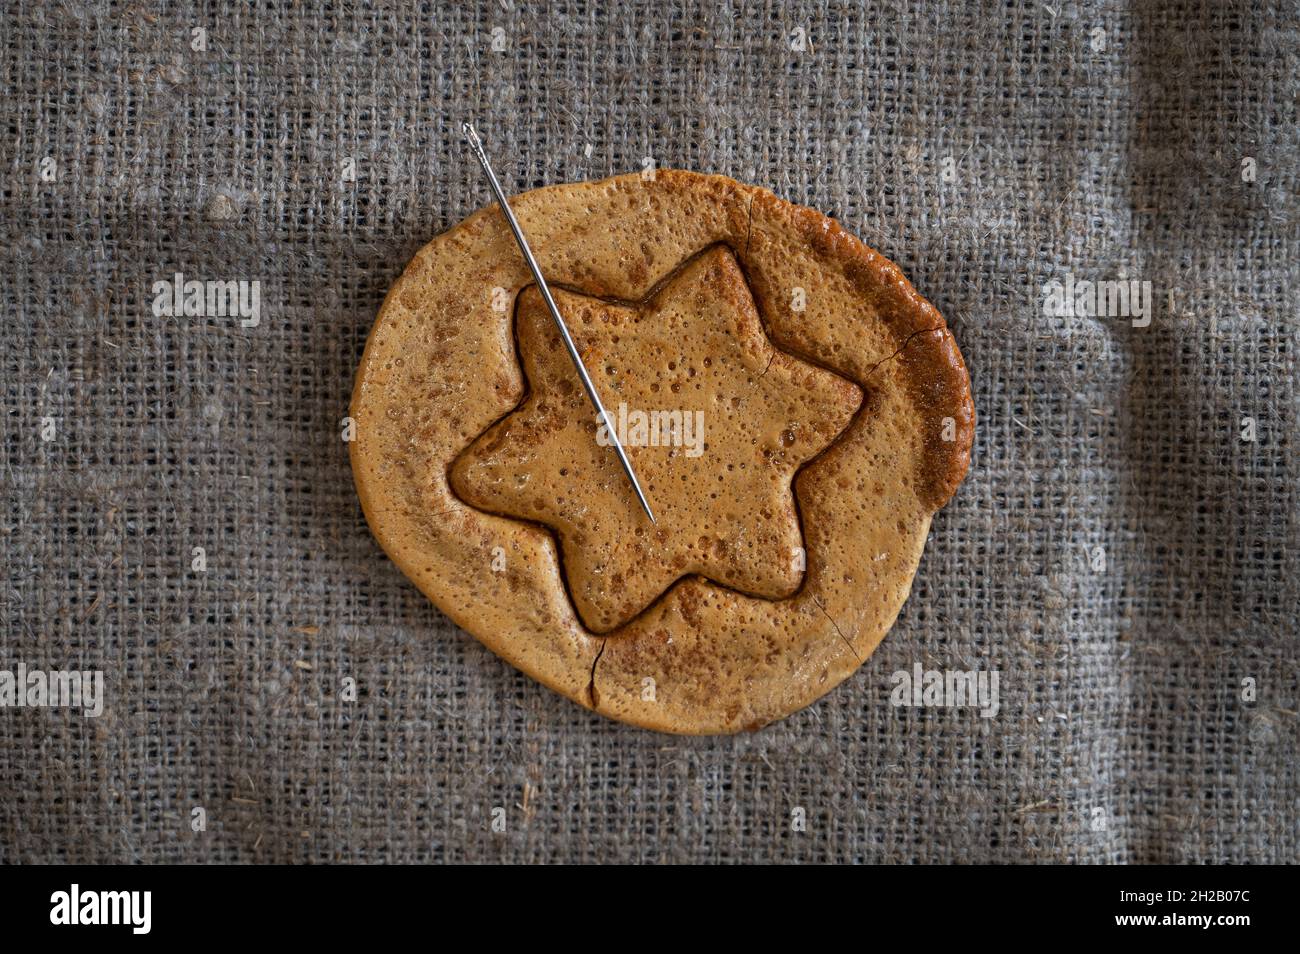 Biscuits de sucre brun caramel avec une aiguille en métal en forme d'étoile.Concept de jeu de survie Banque D'Images